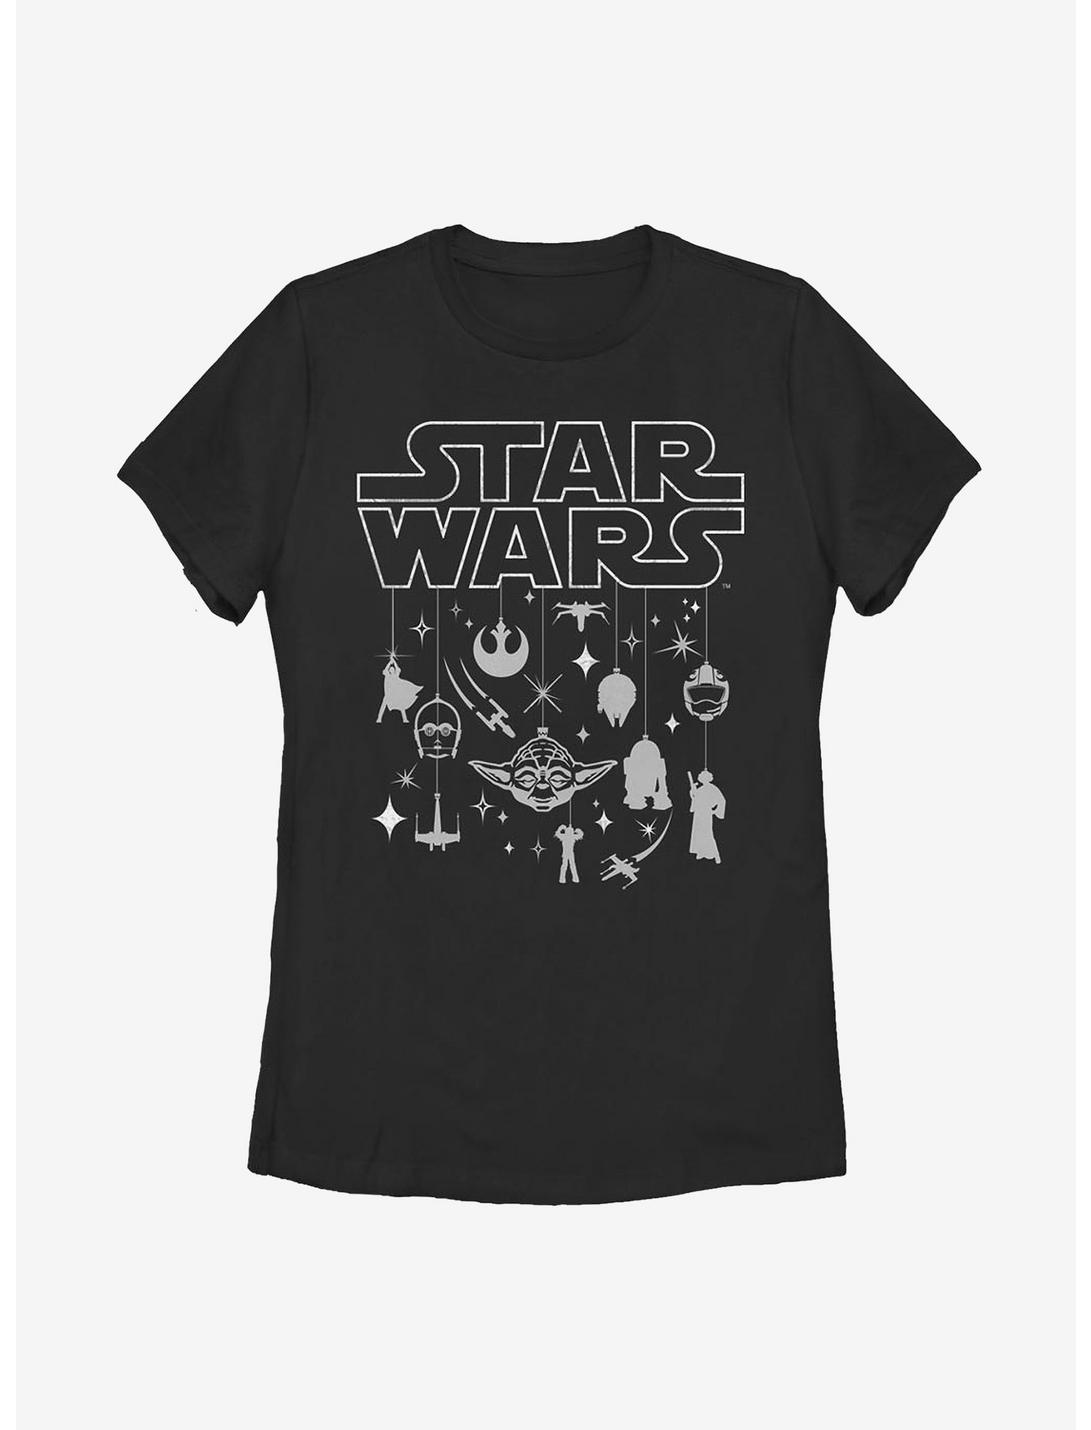 Star Wars Wars Holiday Womens T-Shirt, BLACK, hi-res